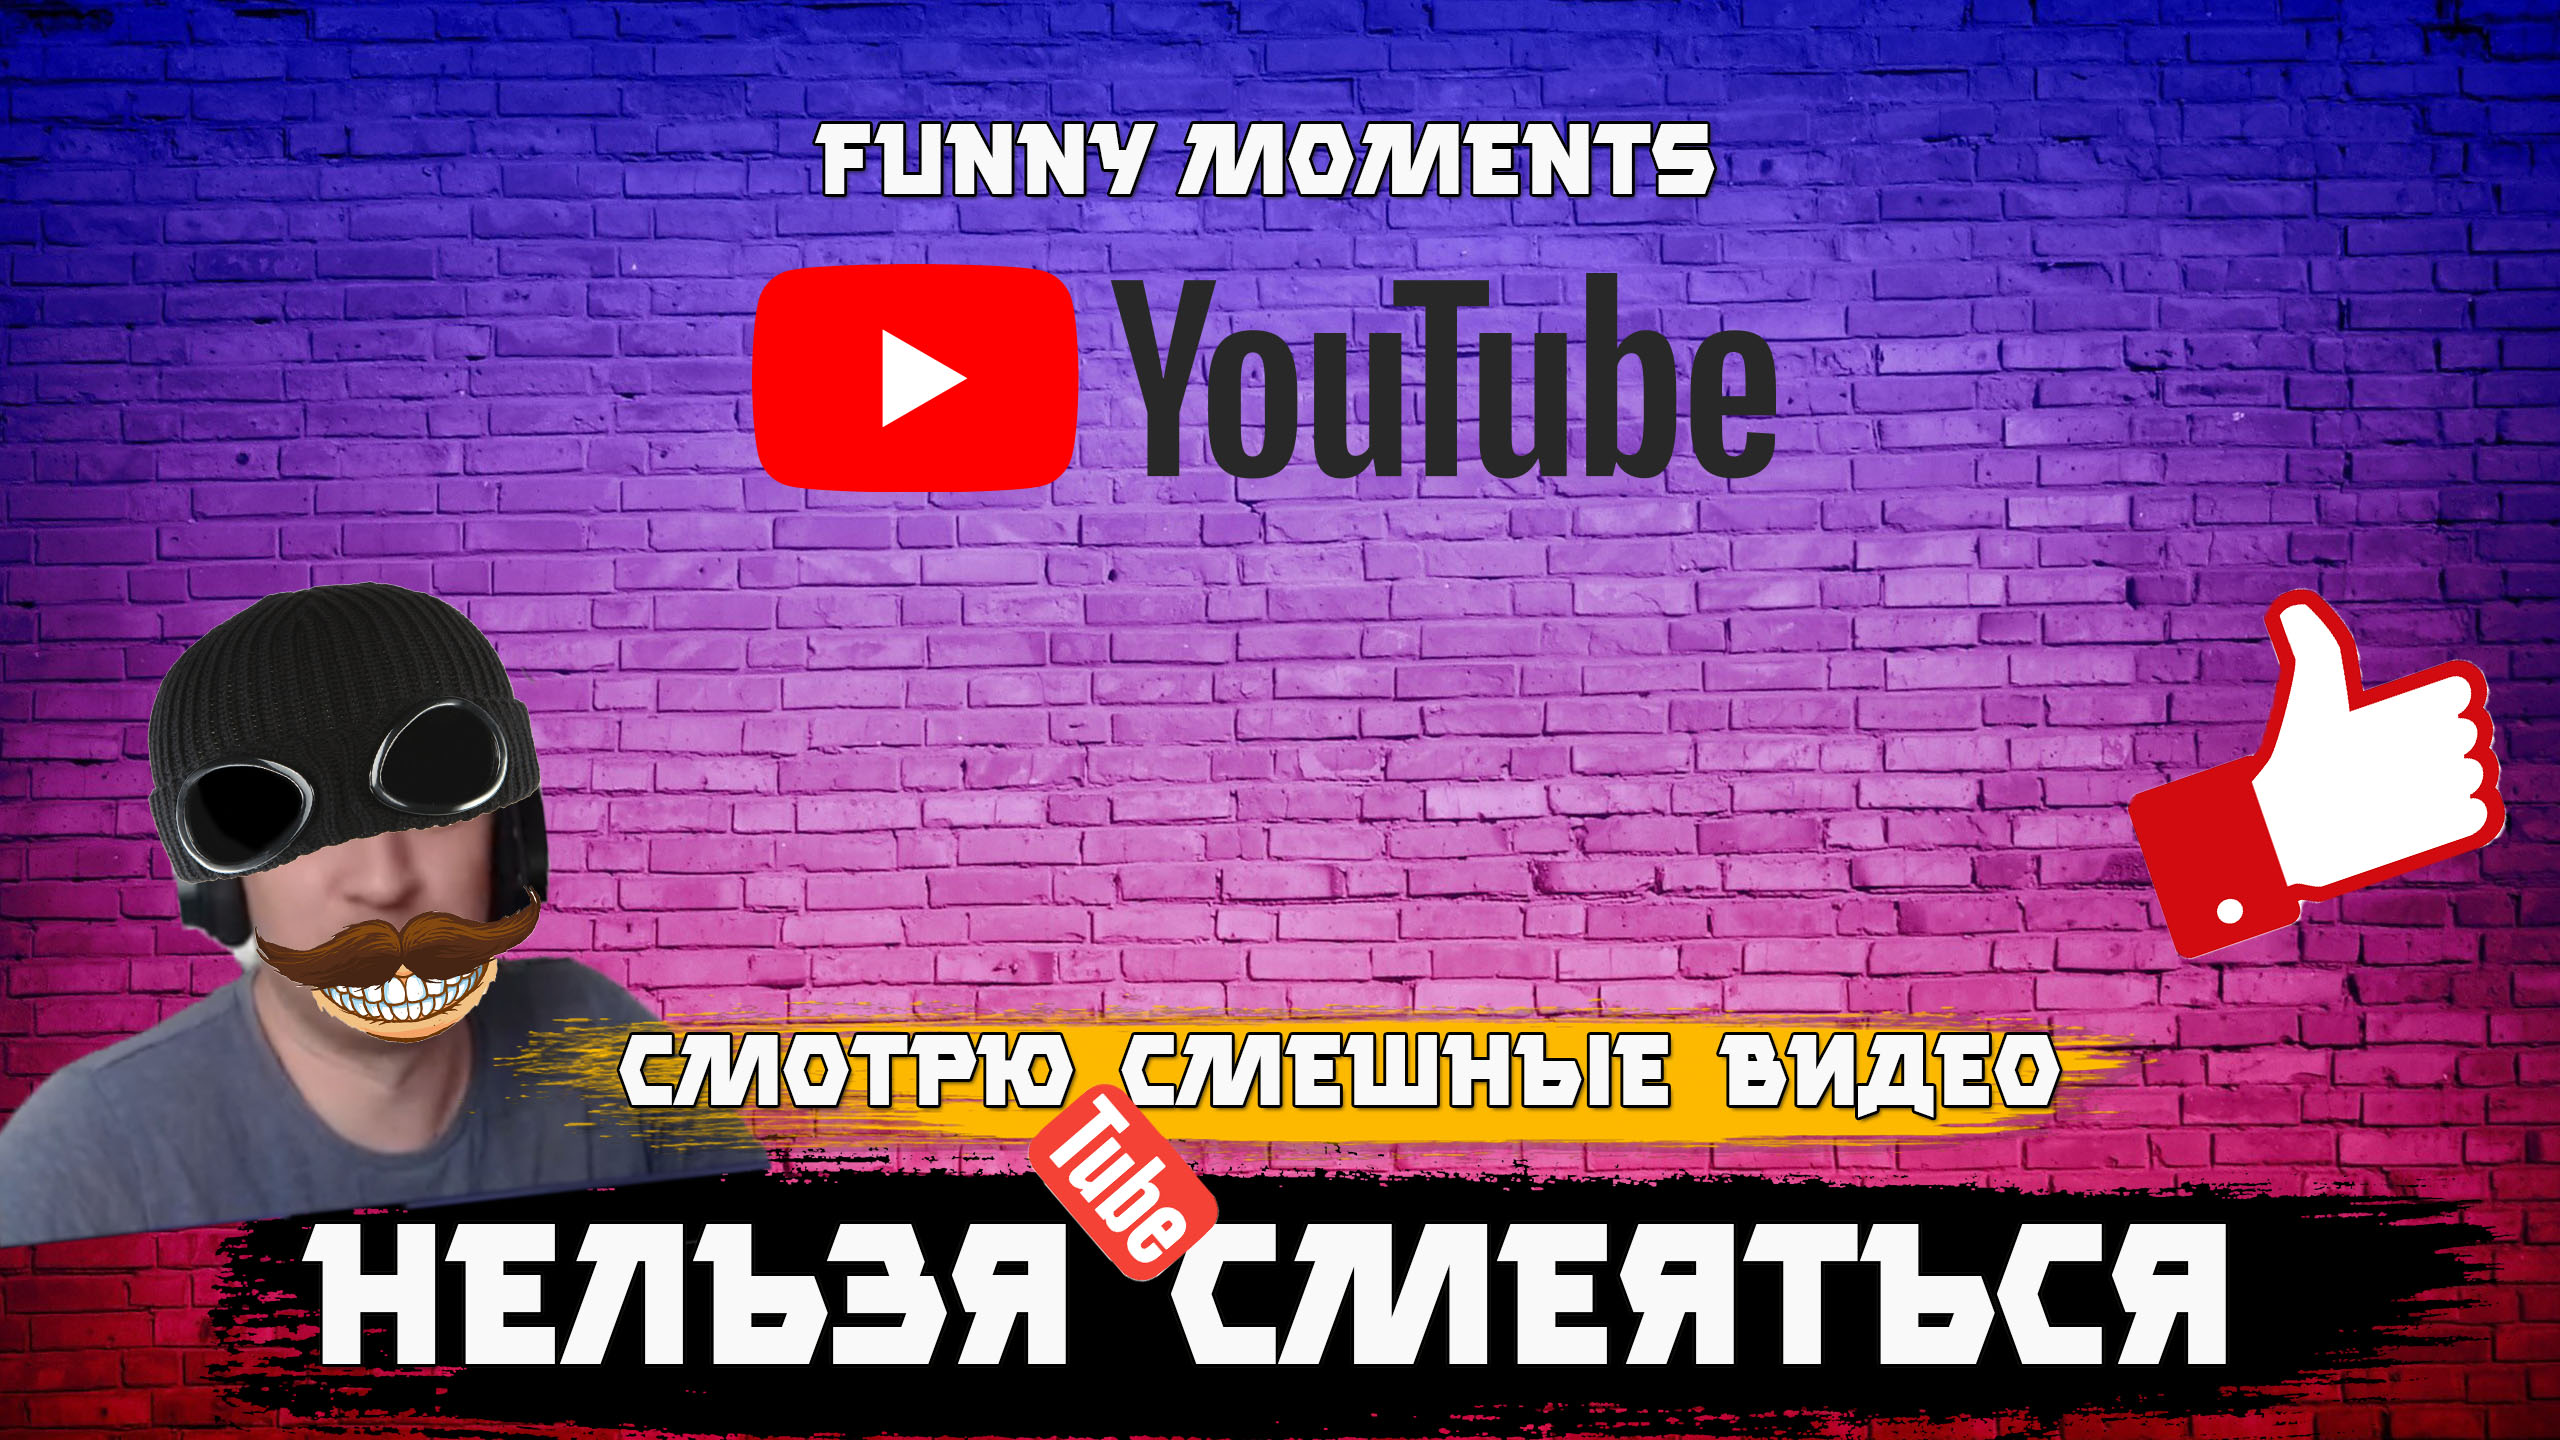 Смотрю на ютубе смешные видео - смеяться нельзя )))